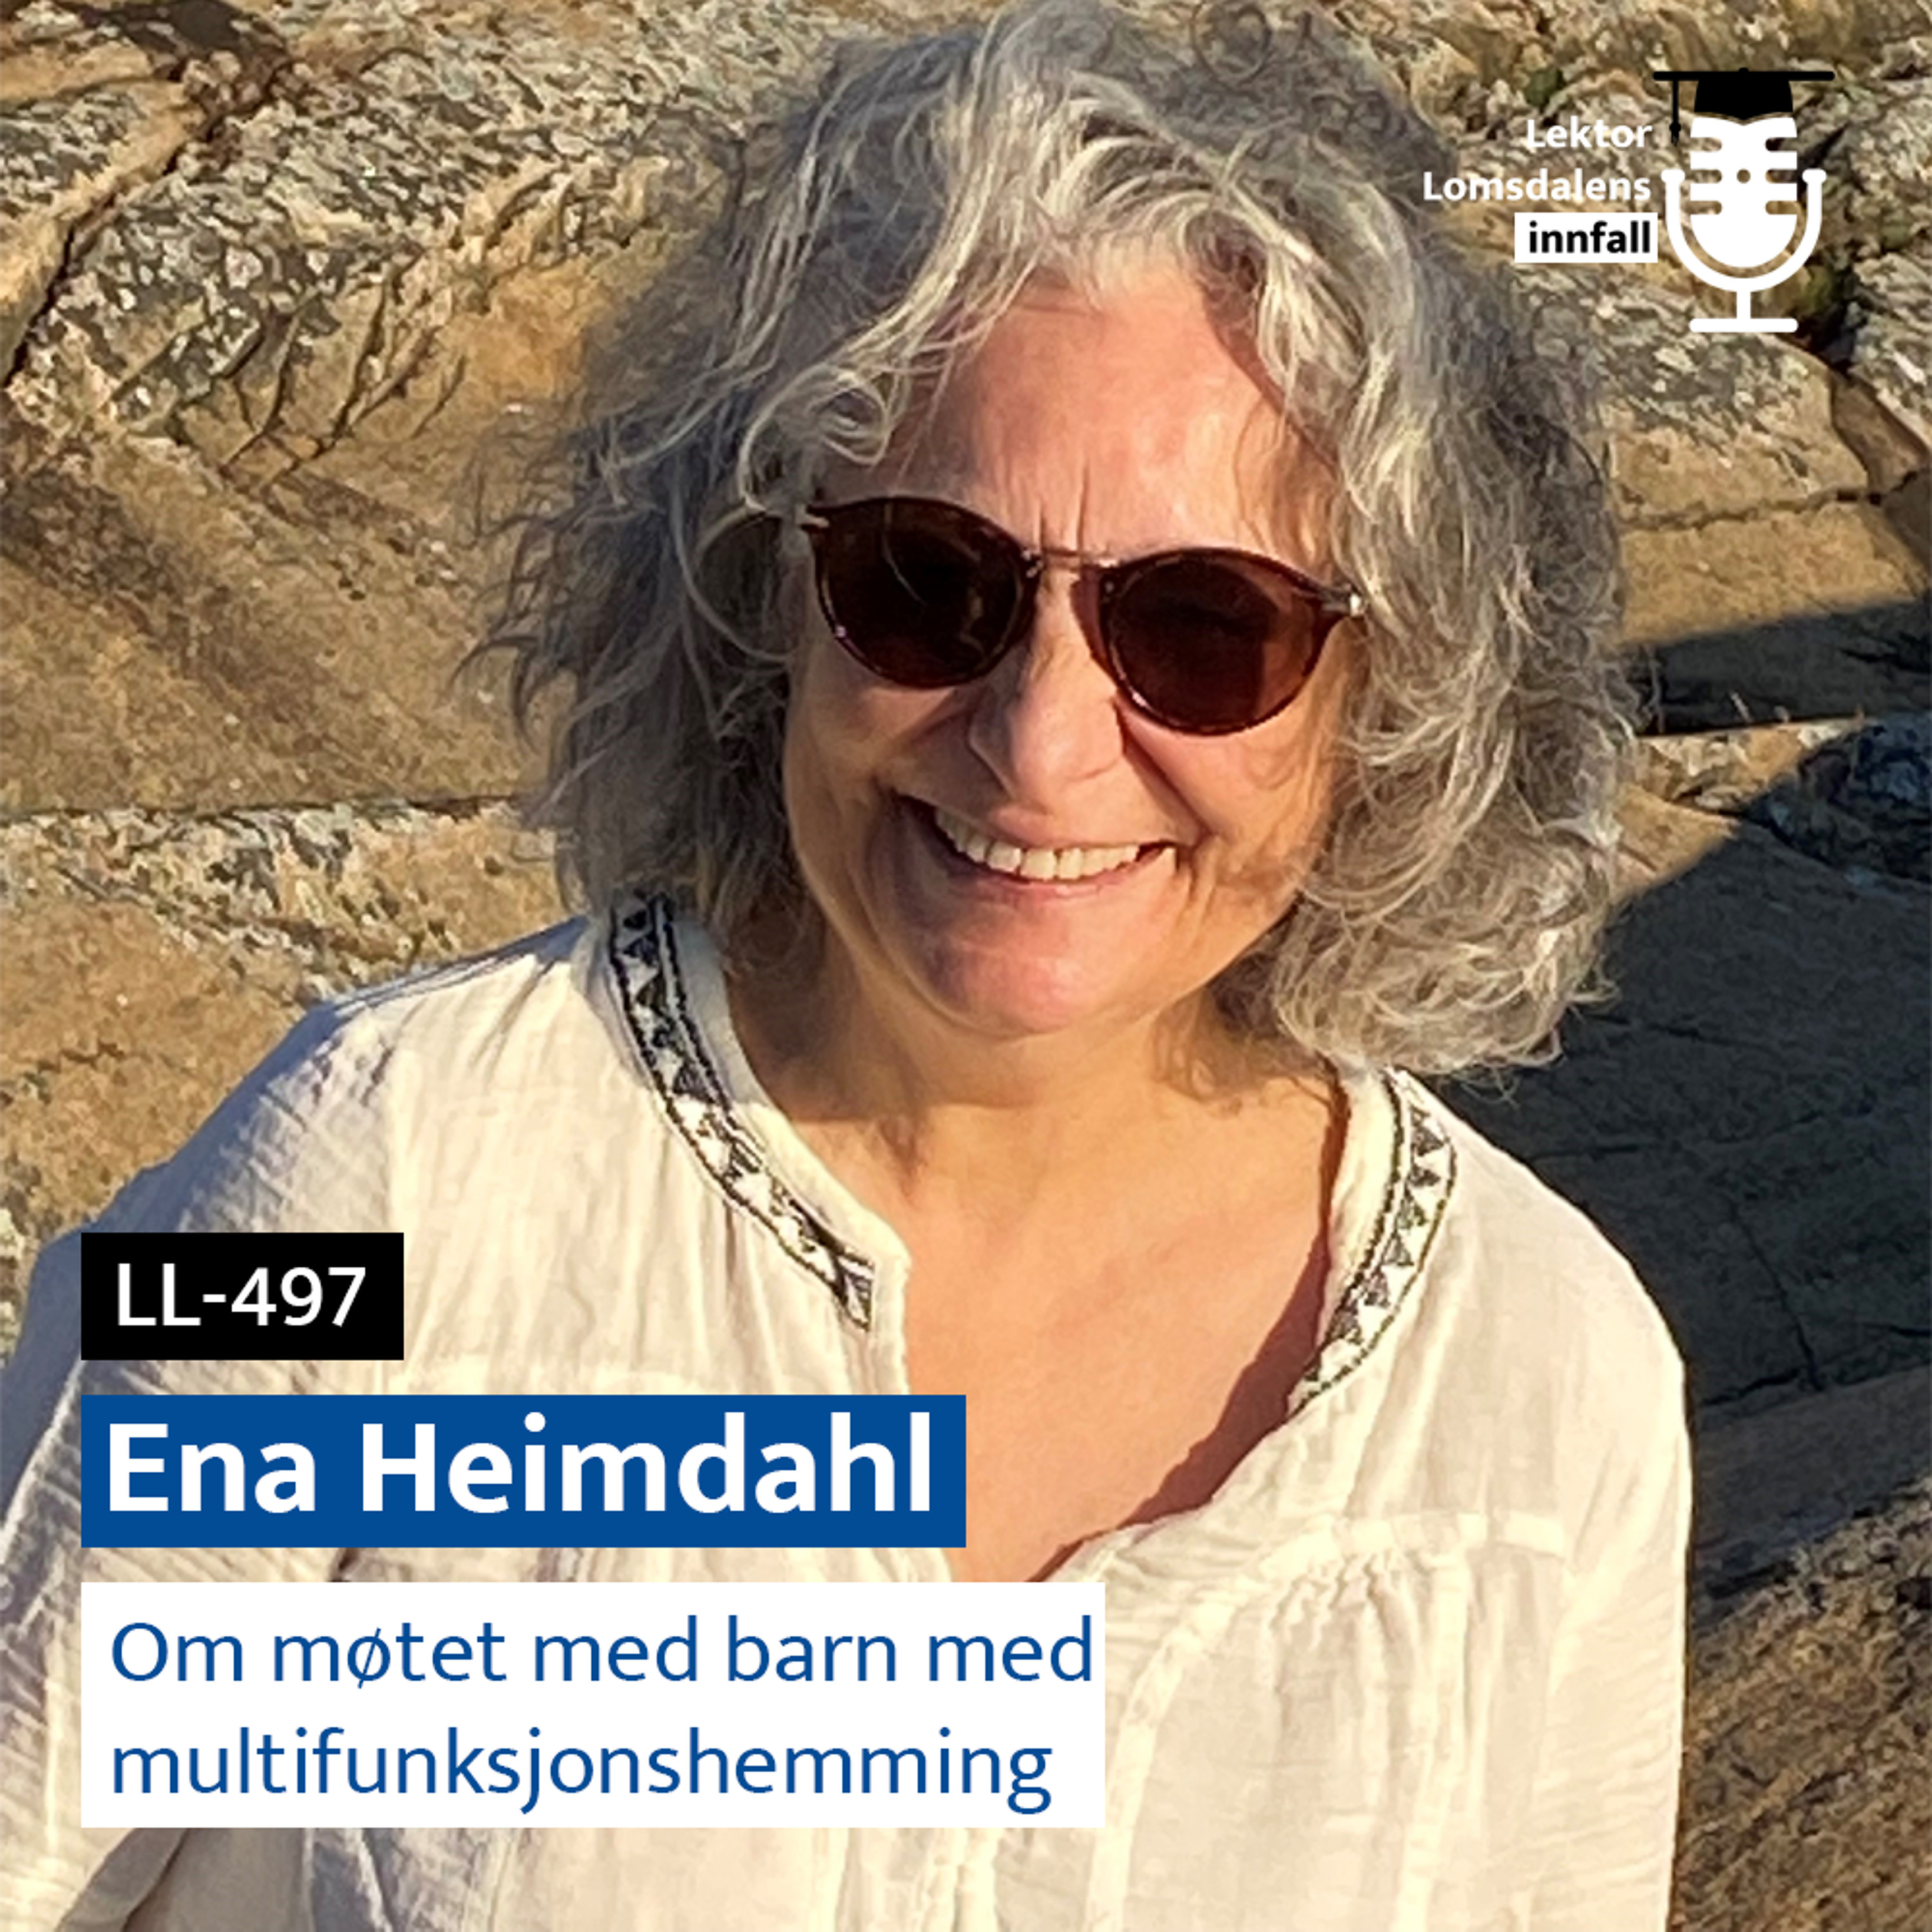 LL-497: Ena Heimdahl om møtet med barn med multifunksjonshemming